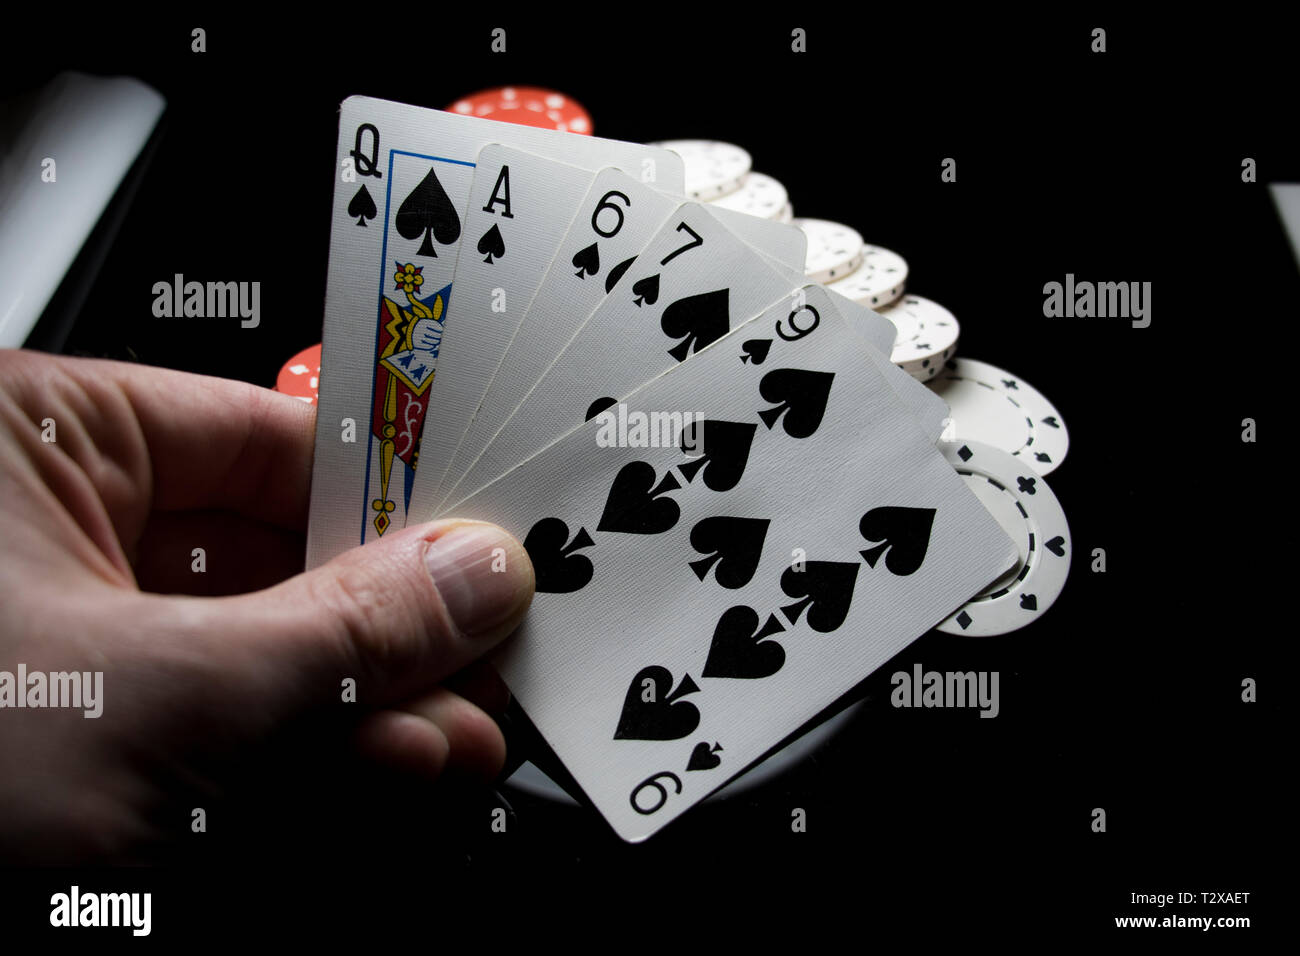 Escalera de color en una mano de póquer Texas Holdem juego jugado en el casino. Juegos de cartas. Foto de stock